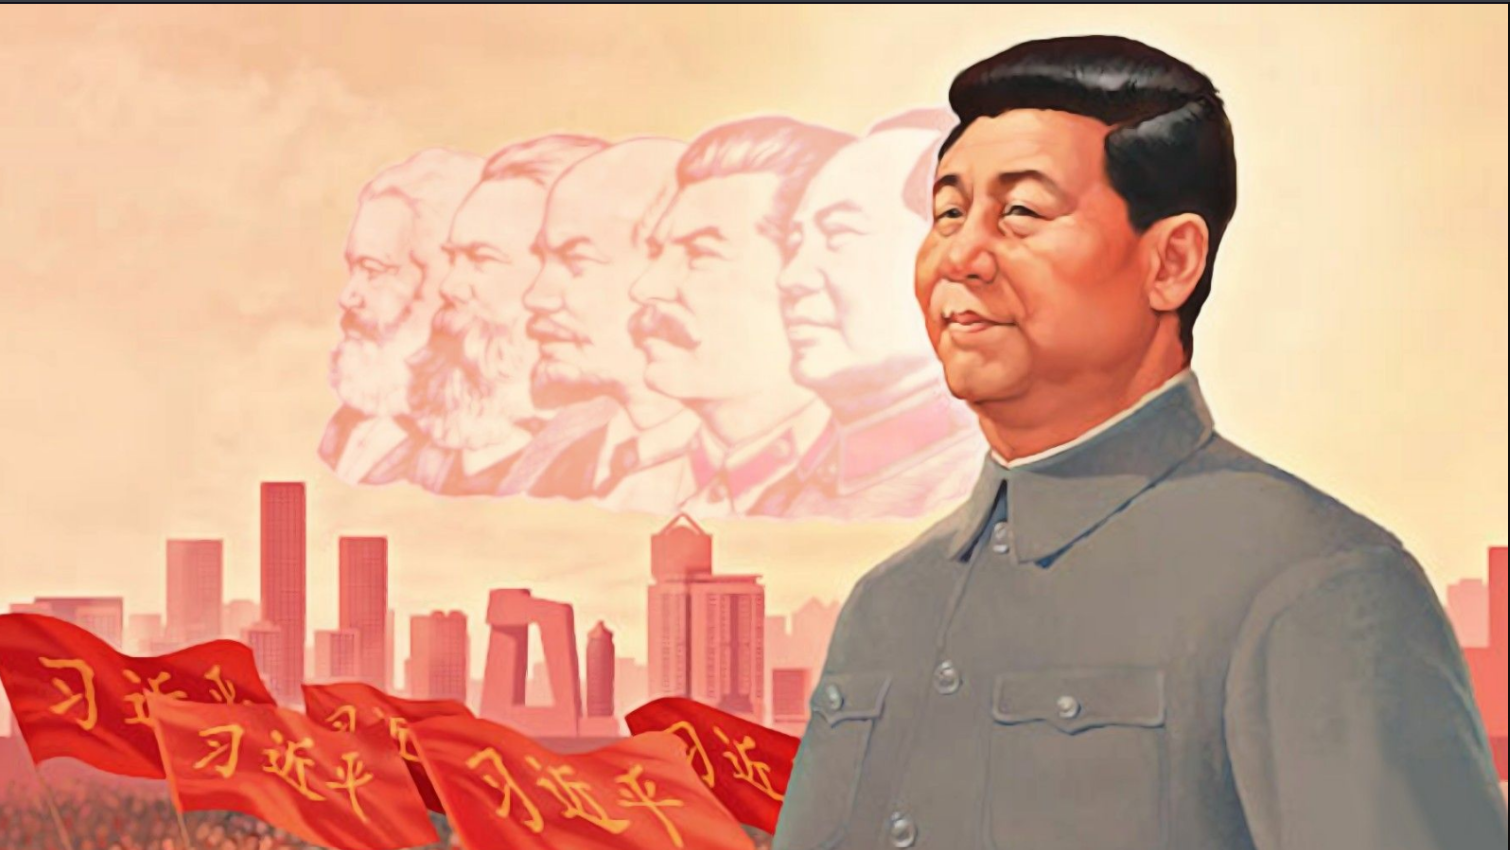 File:Xi Jinping propaganda poster.png